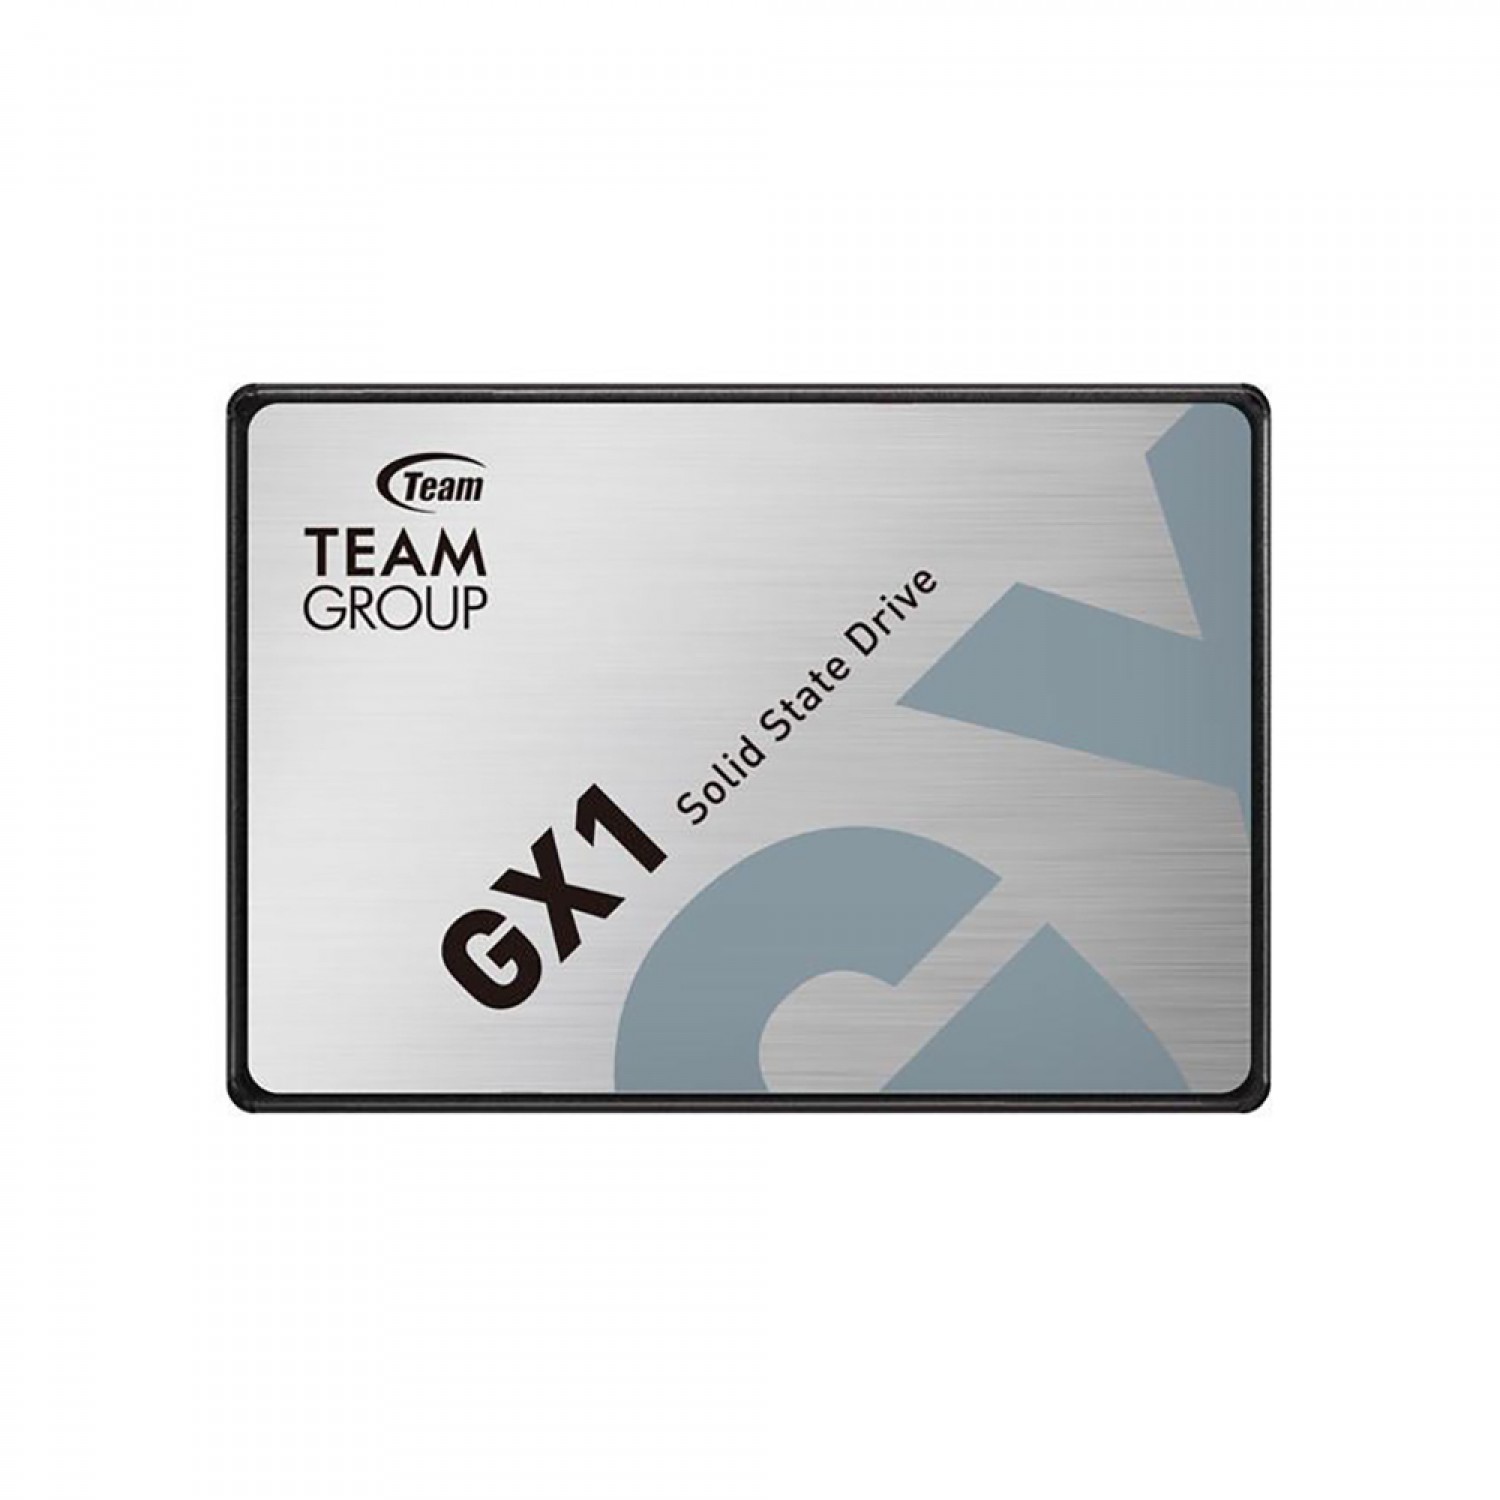 حافظه اس اس دی TeamGroup GX1 960GB